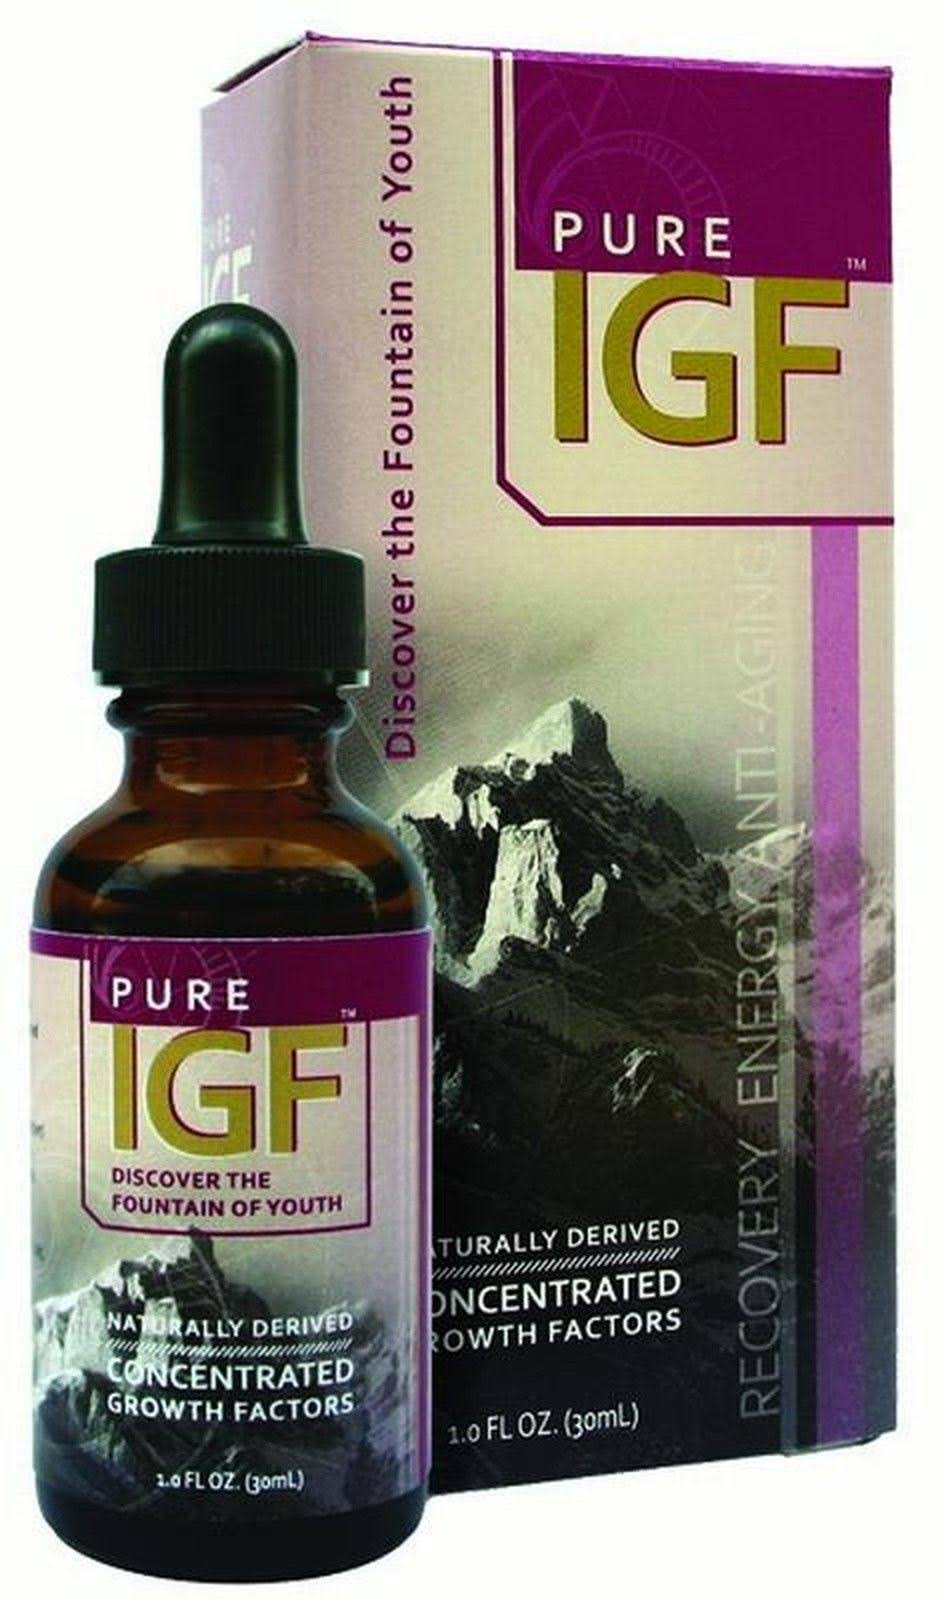 Pure Solutions IGF Growth Factors Supplement - 1oz